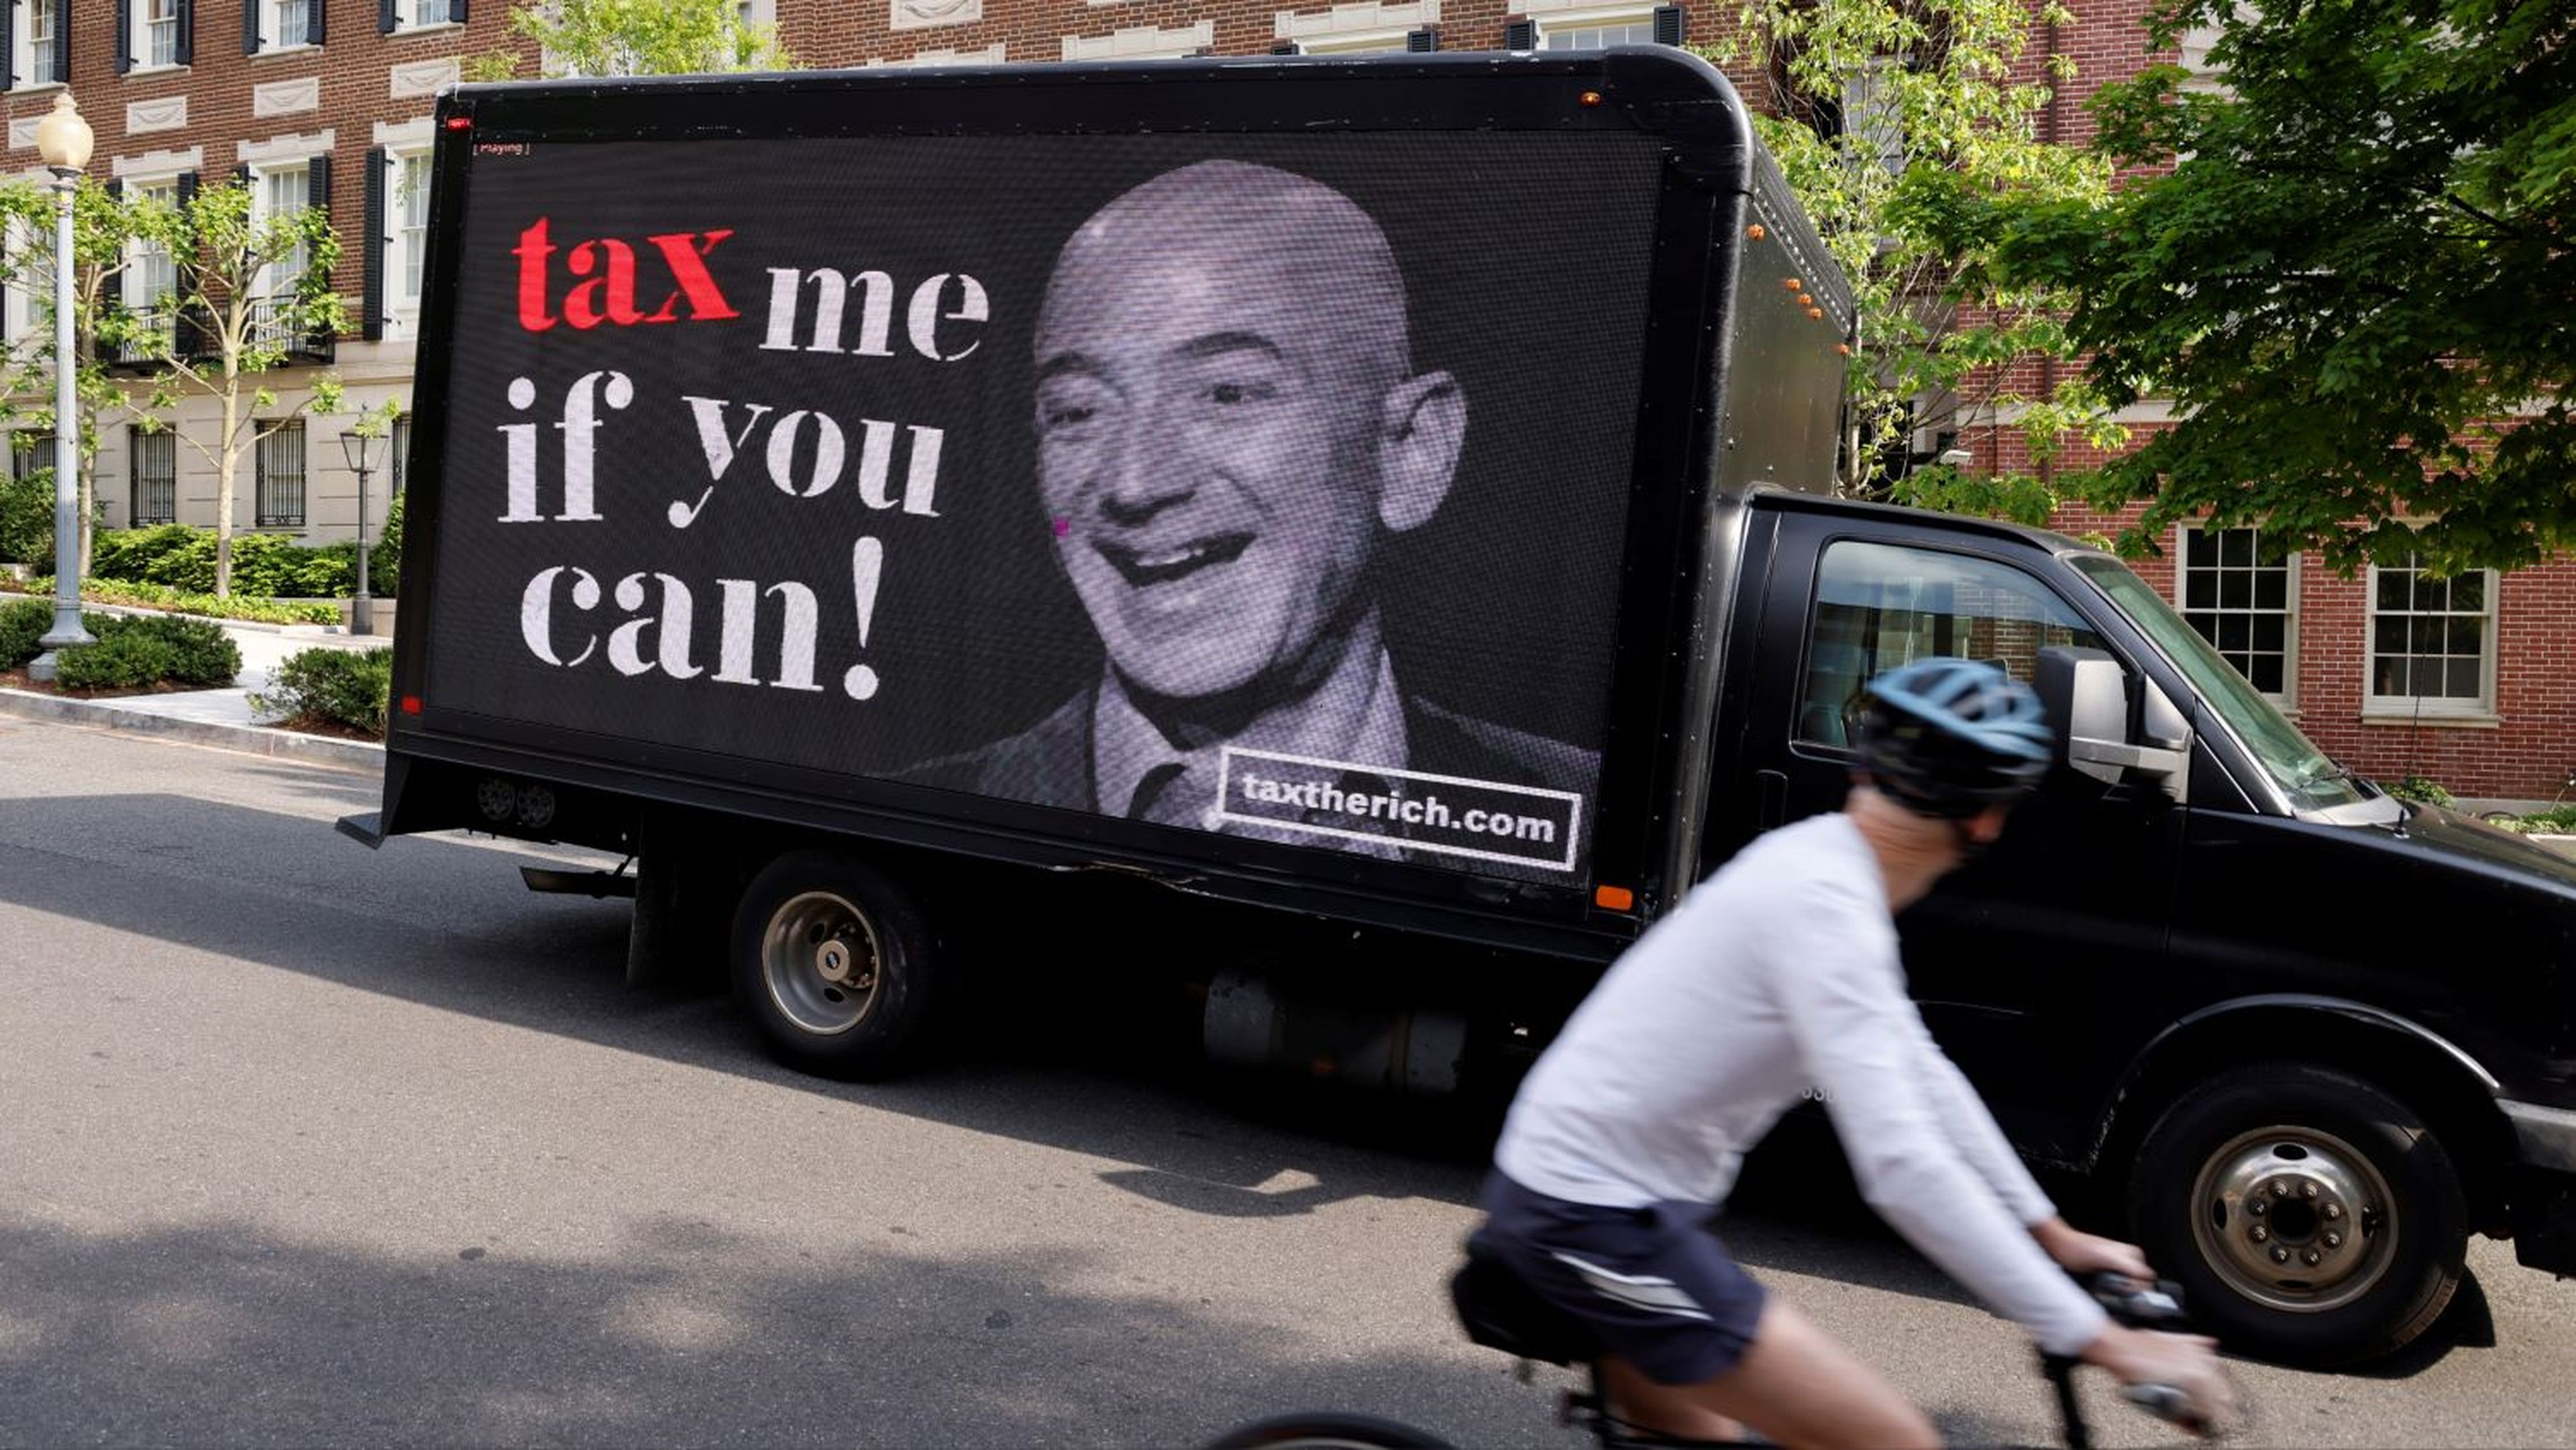 Imagen de Jeff Bezos, fundador de Amazon, utilizada en una protesta en EEUU para demandar el pago de impuestos.